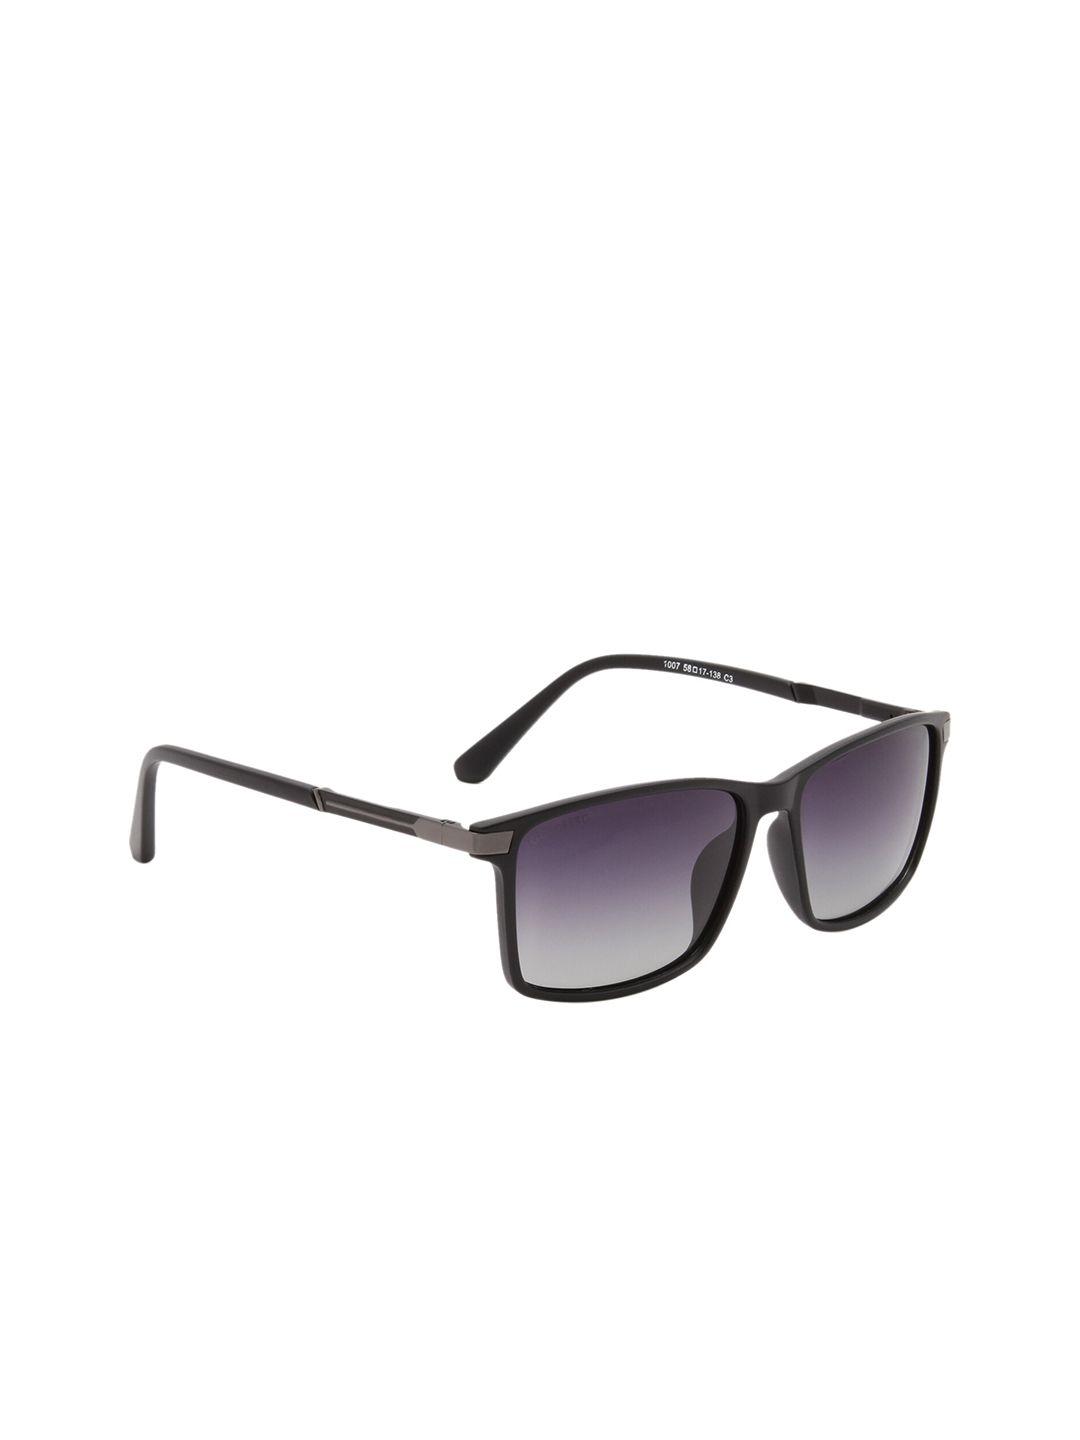 gold berg unisex lens & wayfarer sunglasses with uv protected lens